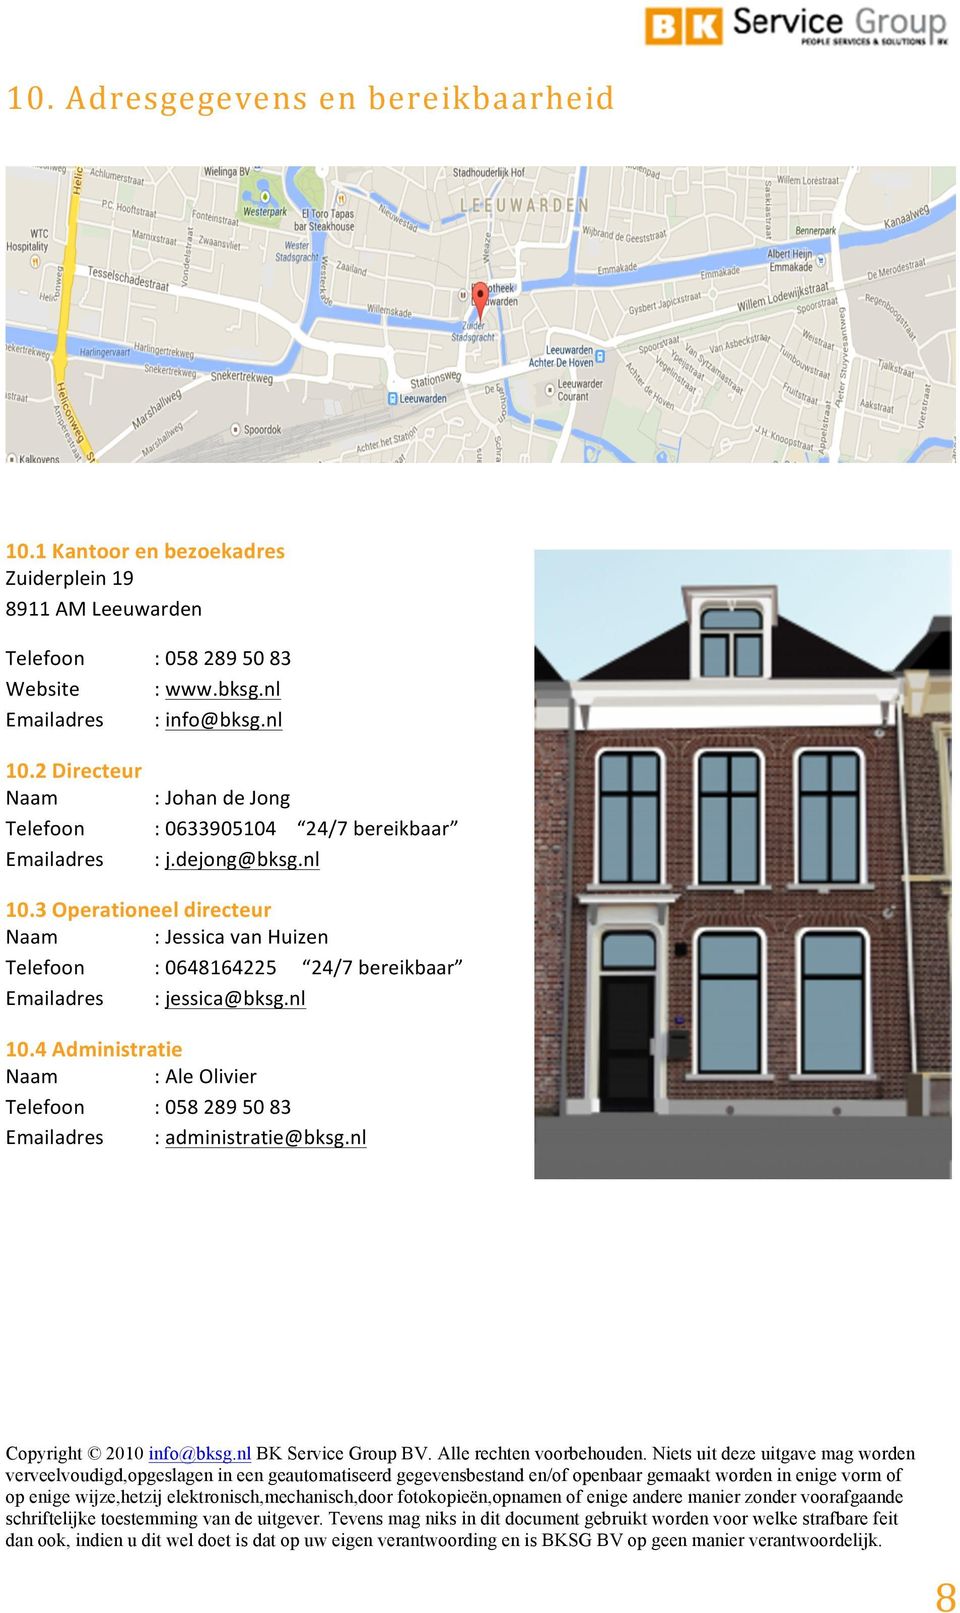 nl Emailadres :info@bksg.nl 10.2#Directeur## Naam :JohandeJong Telefoon :0633905104 24/7bereikbaar Emailadres :j.